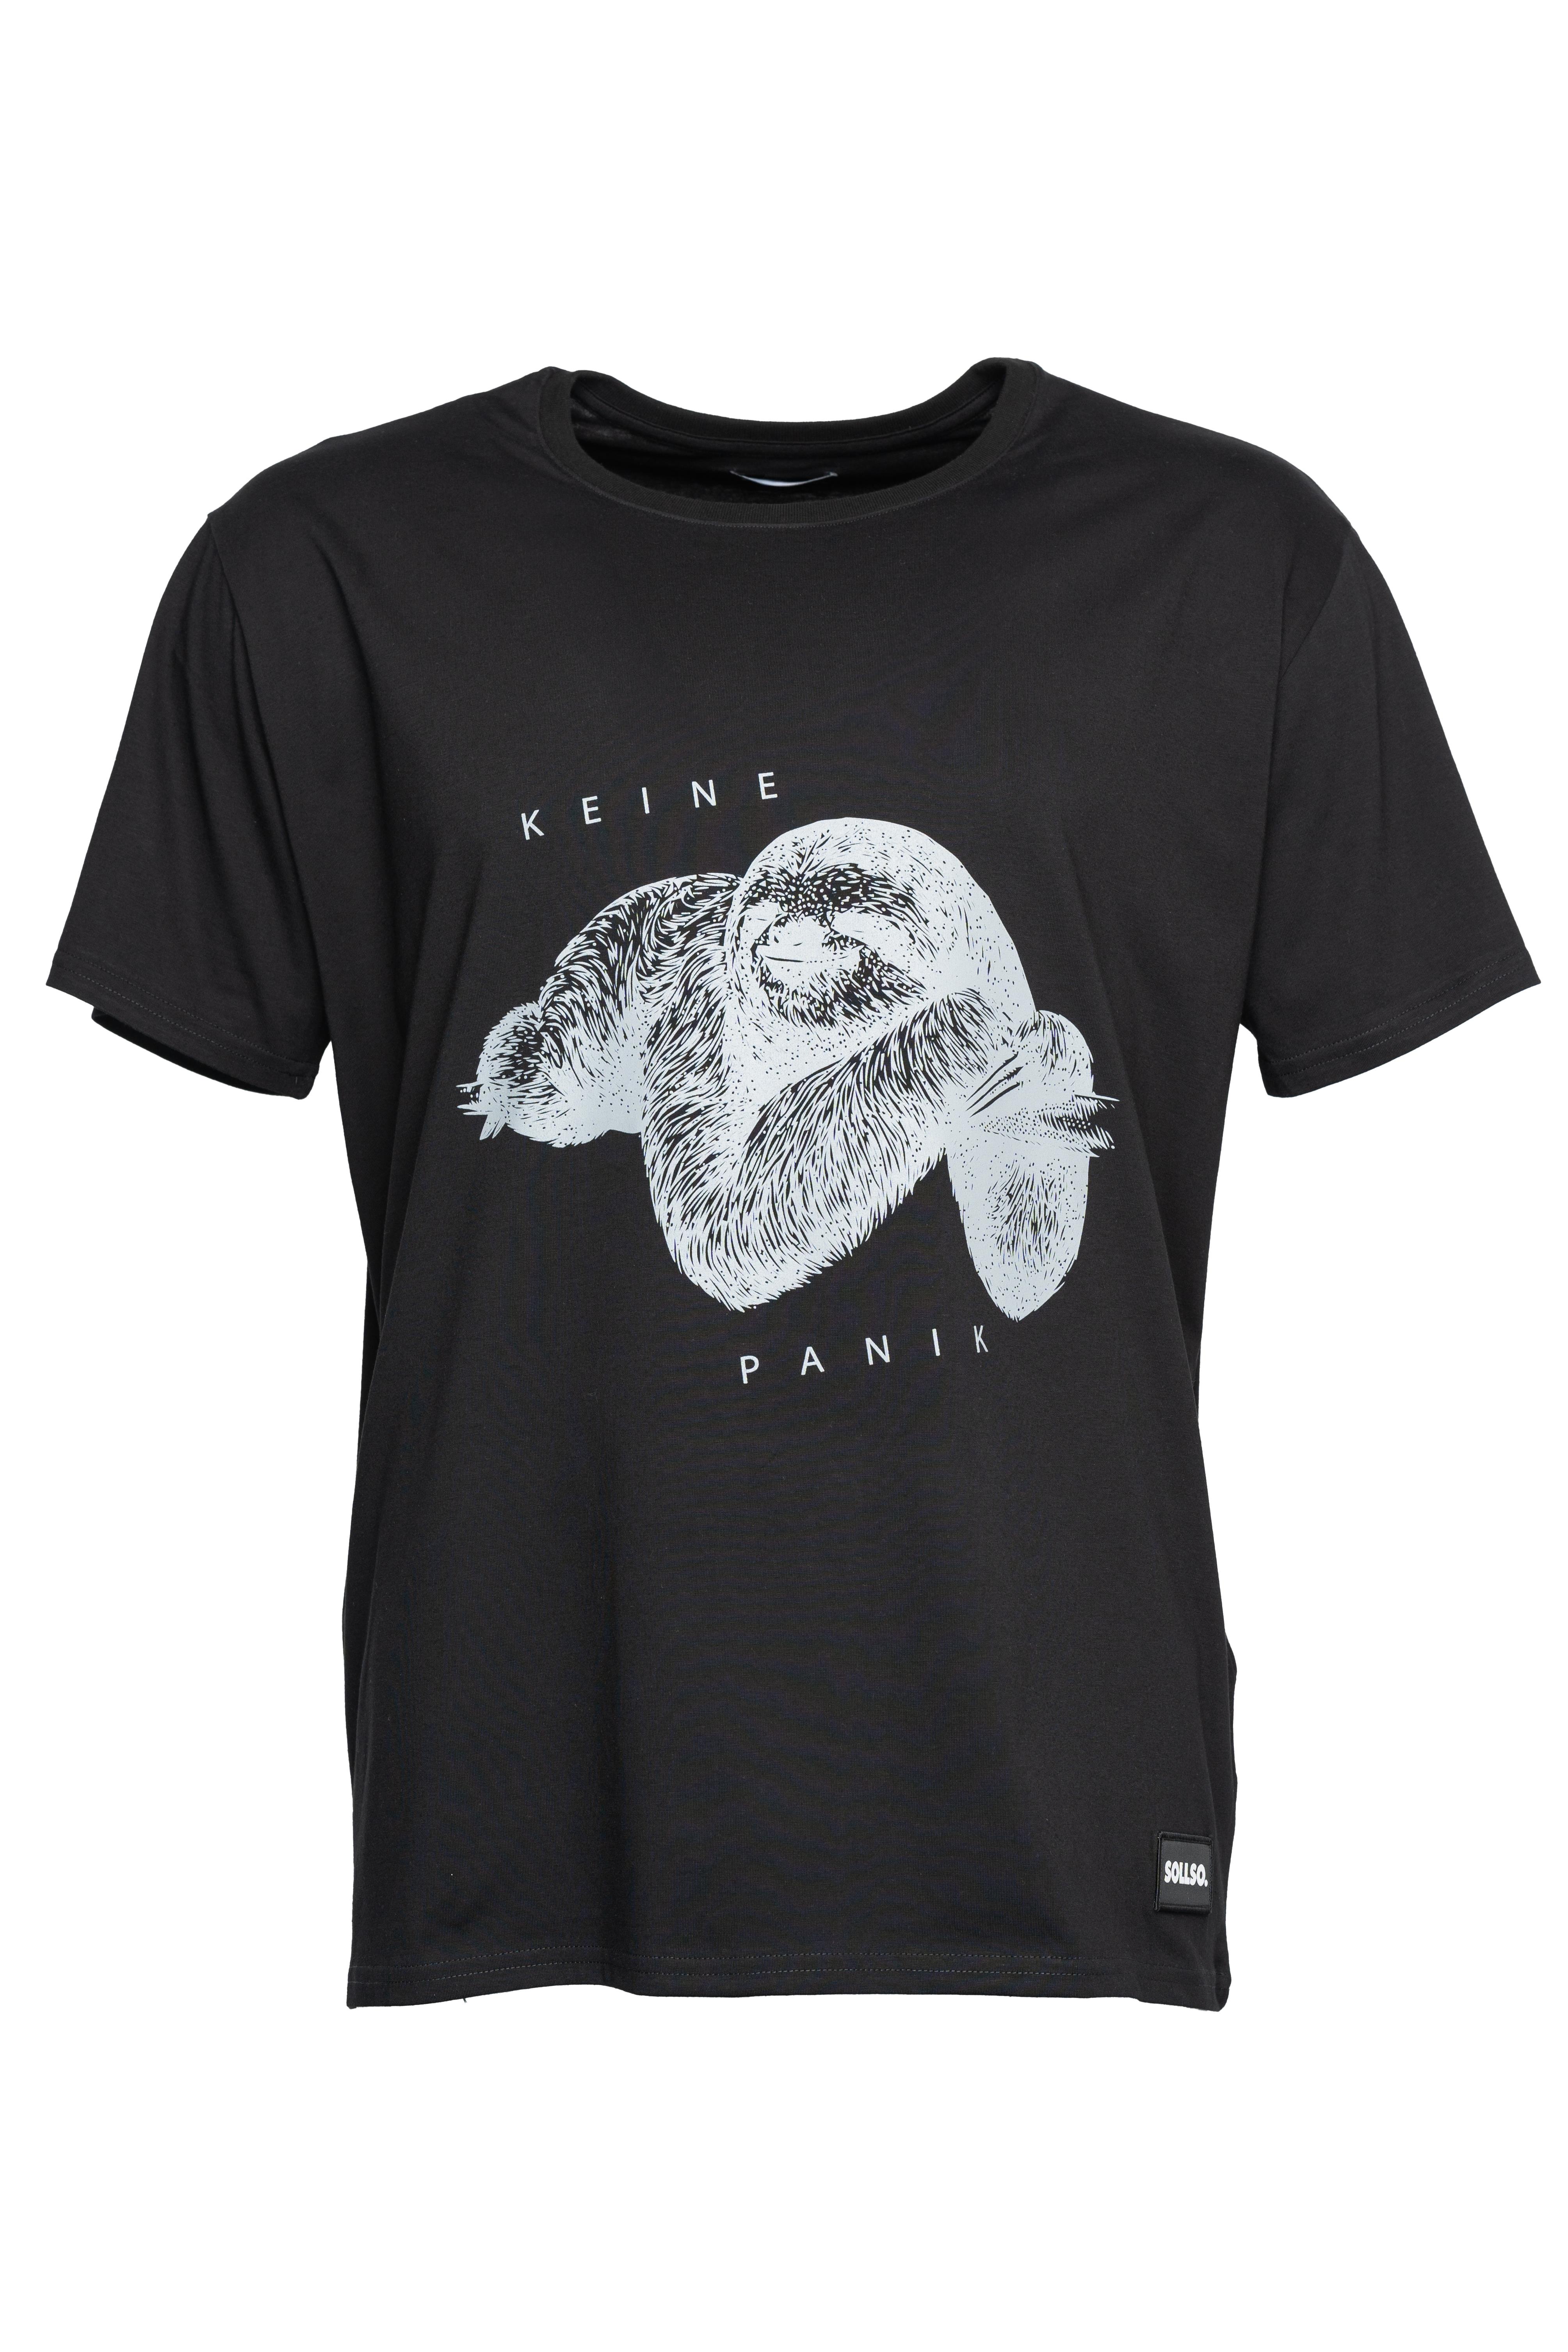 SOLLSO. T-Shirt "Keine Panik Faultier", Farbe Dark Black, Größe 3XL